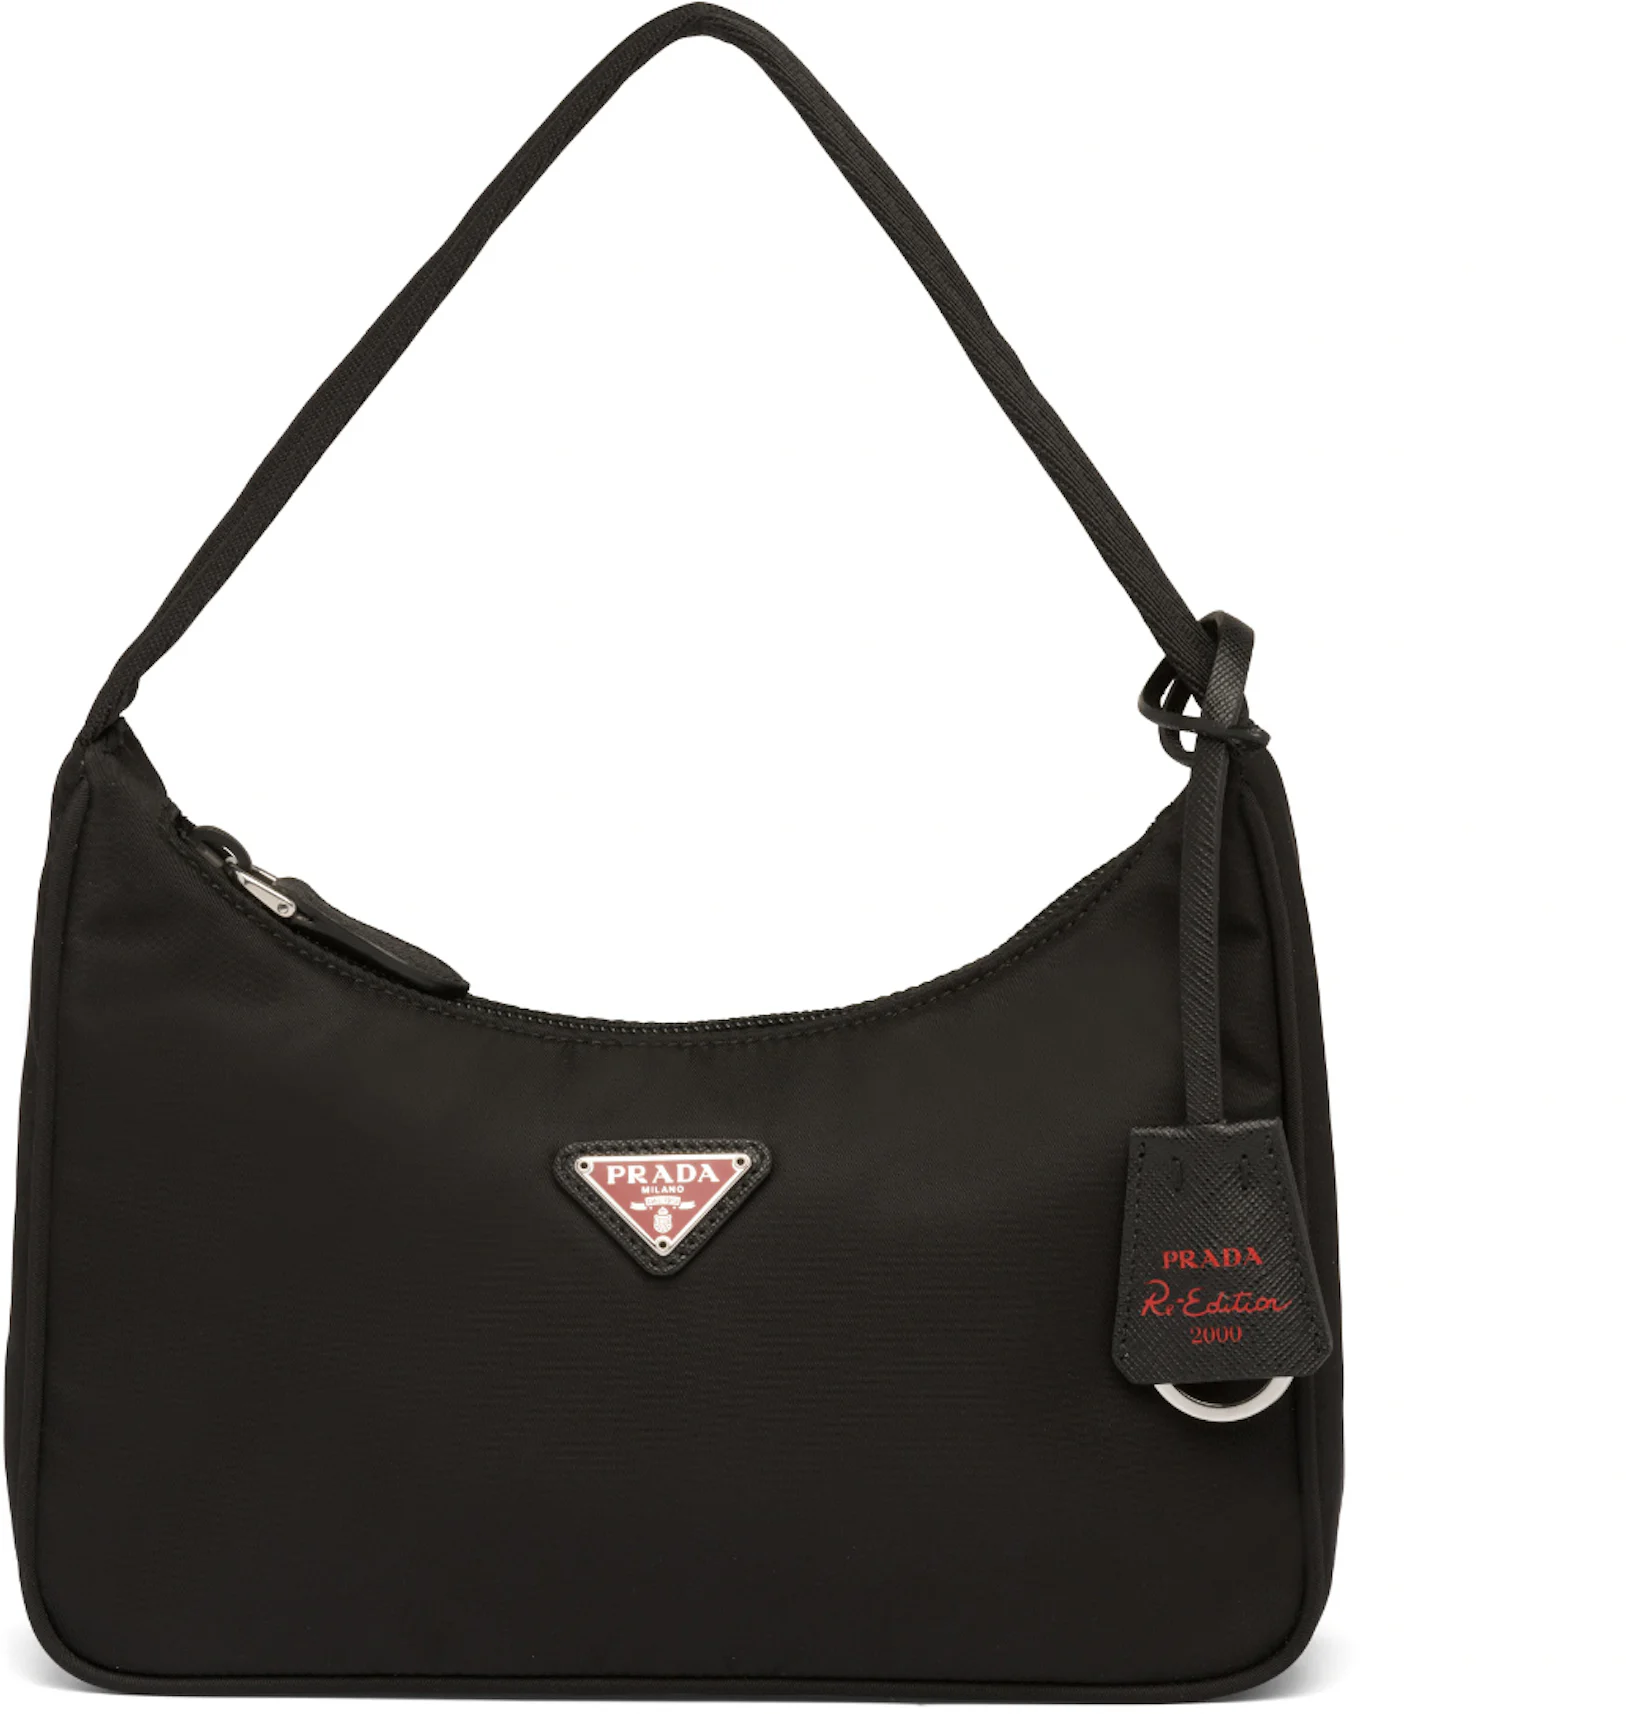 Prada Re-Edition 2000 Nylon Bag Mini Black/Red in Nylon with Silver ...